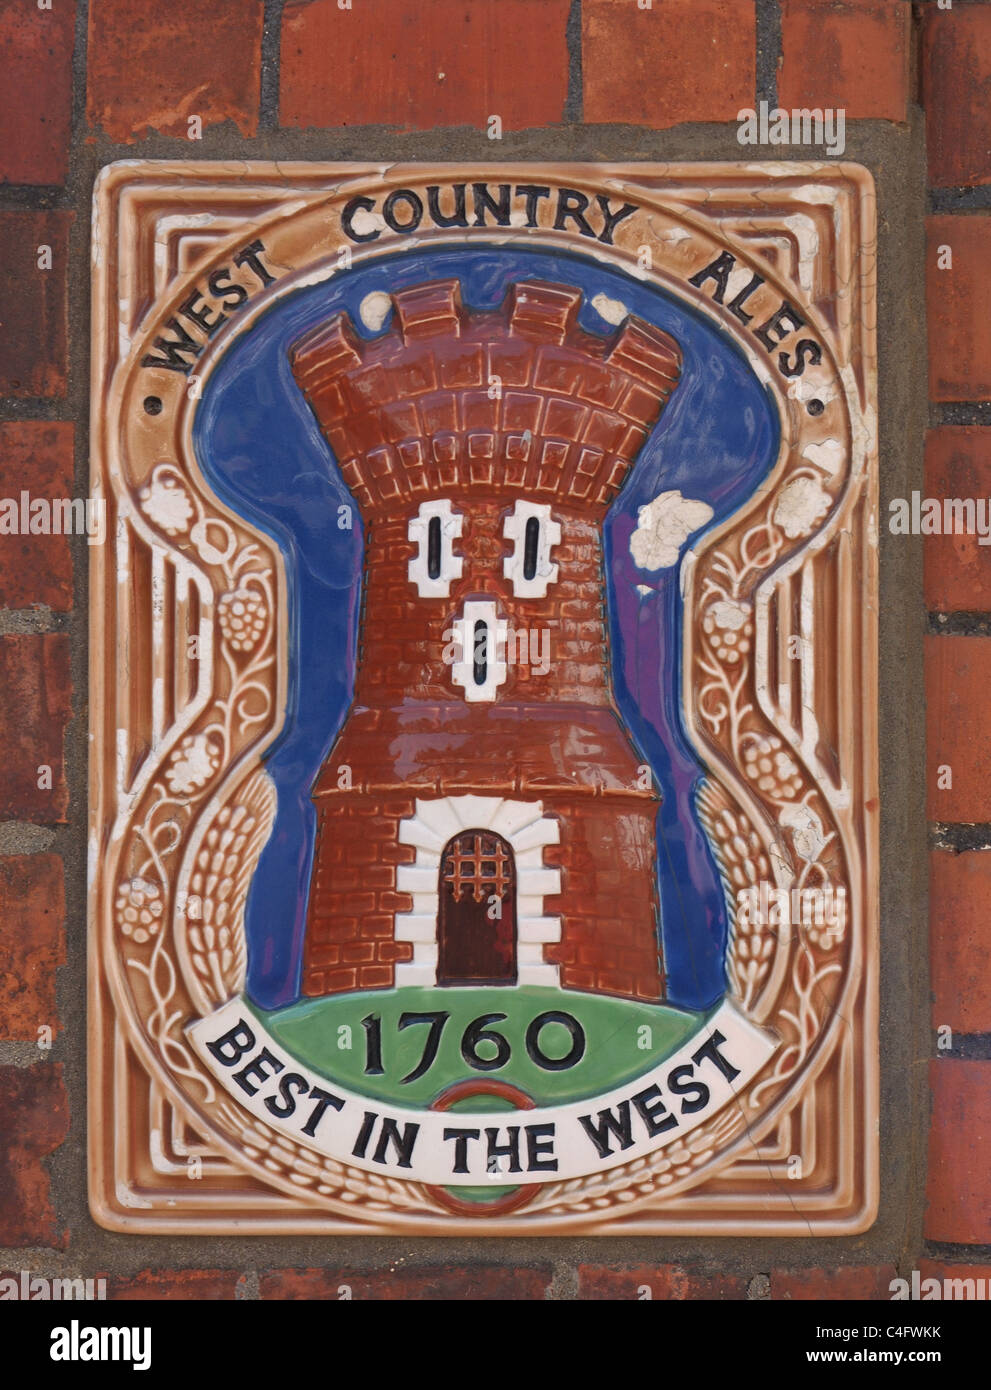 West Country Ales cervecería de cerámica placa Foto de stock